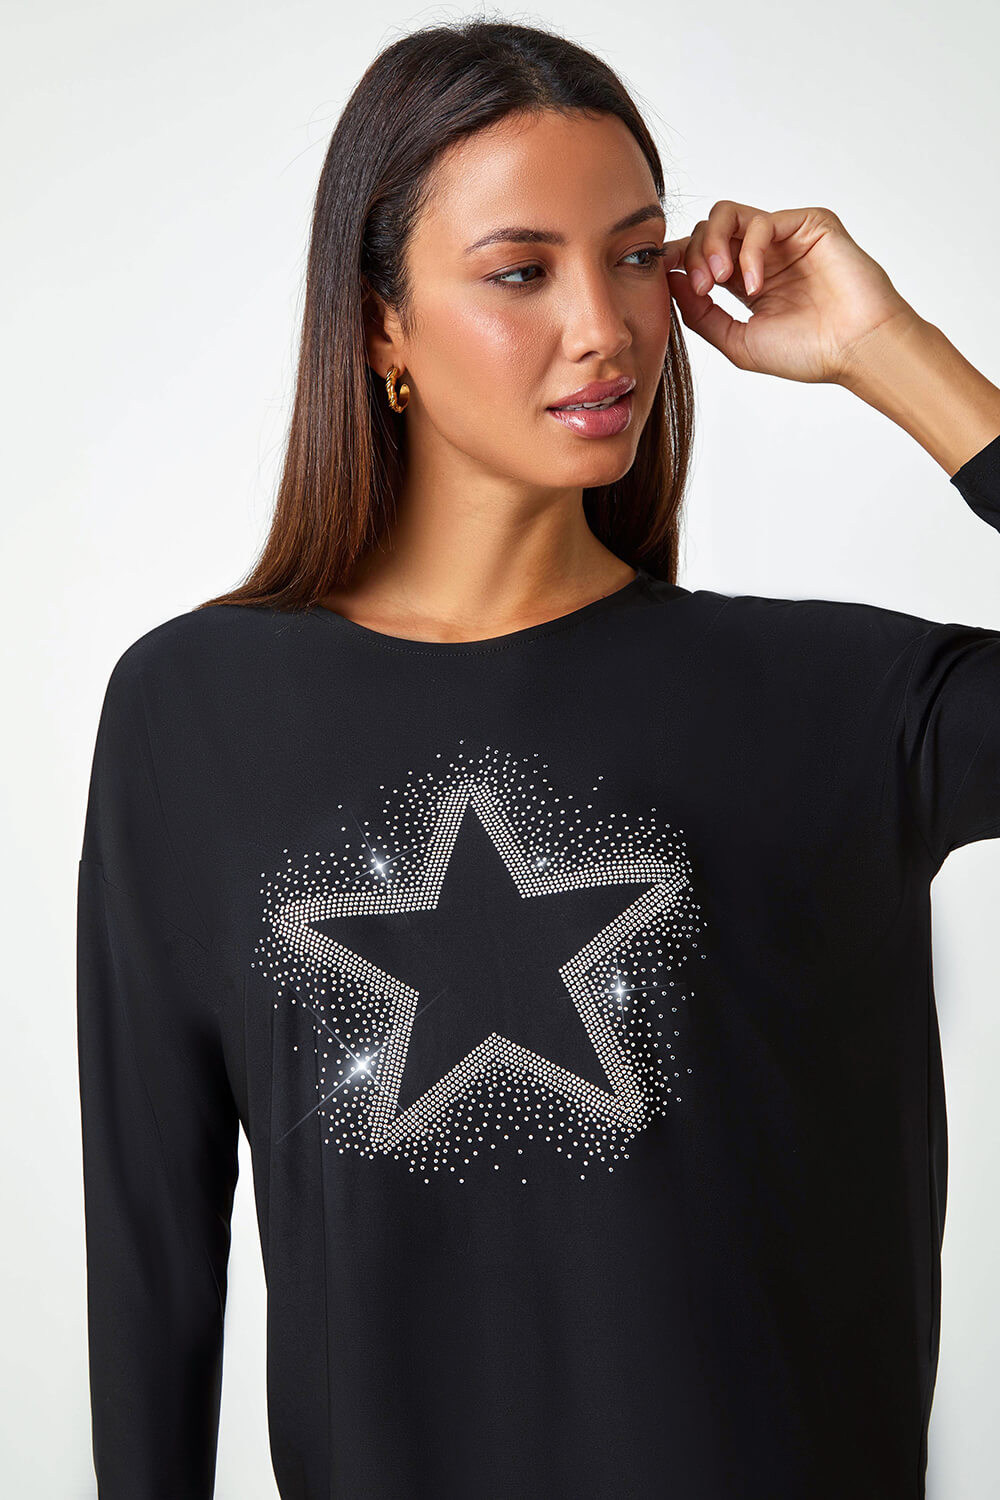 Black Embellished Star Print Stretch Top, Image 4 of 5